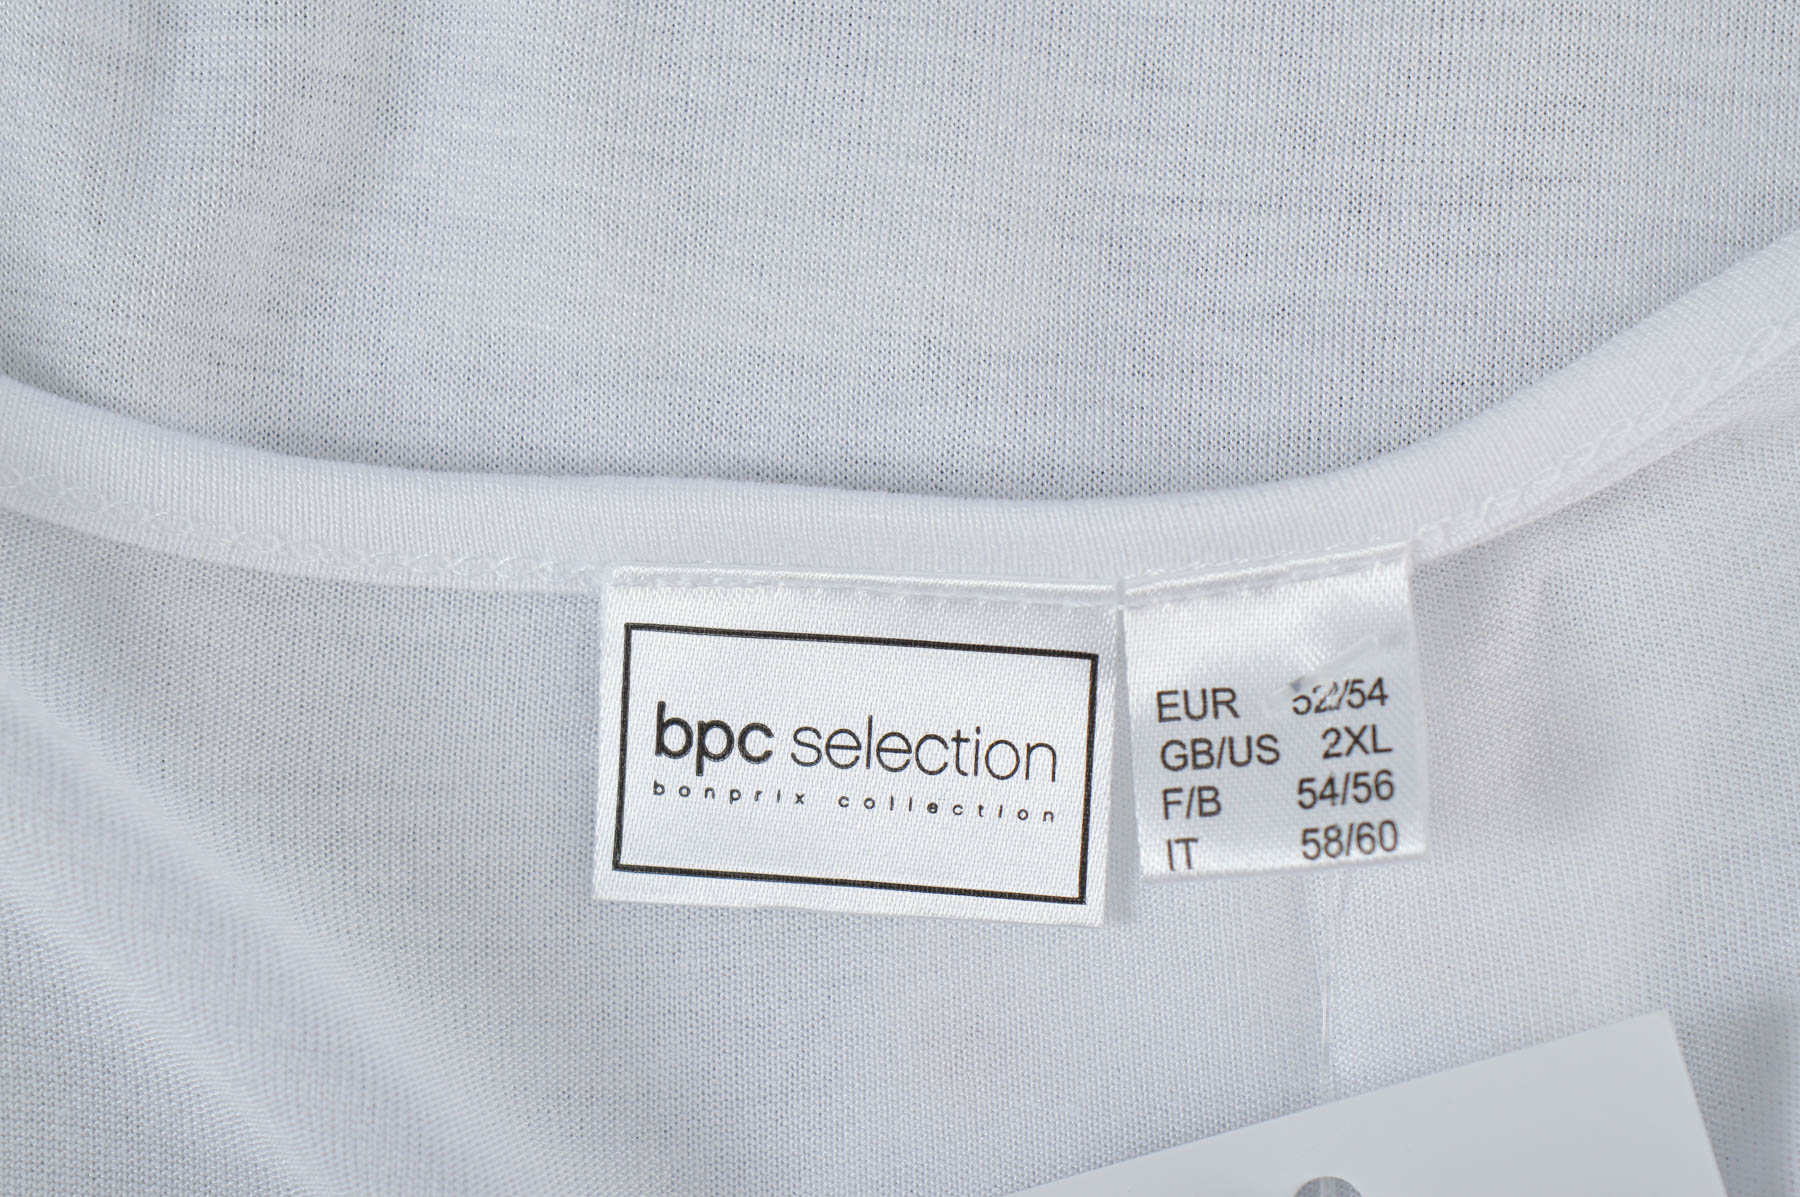 Γυναικείος χιτώνας - Bpc selection bonprix collection - 2